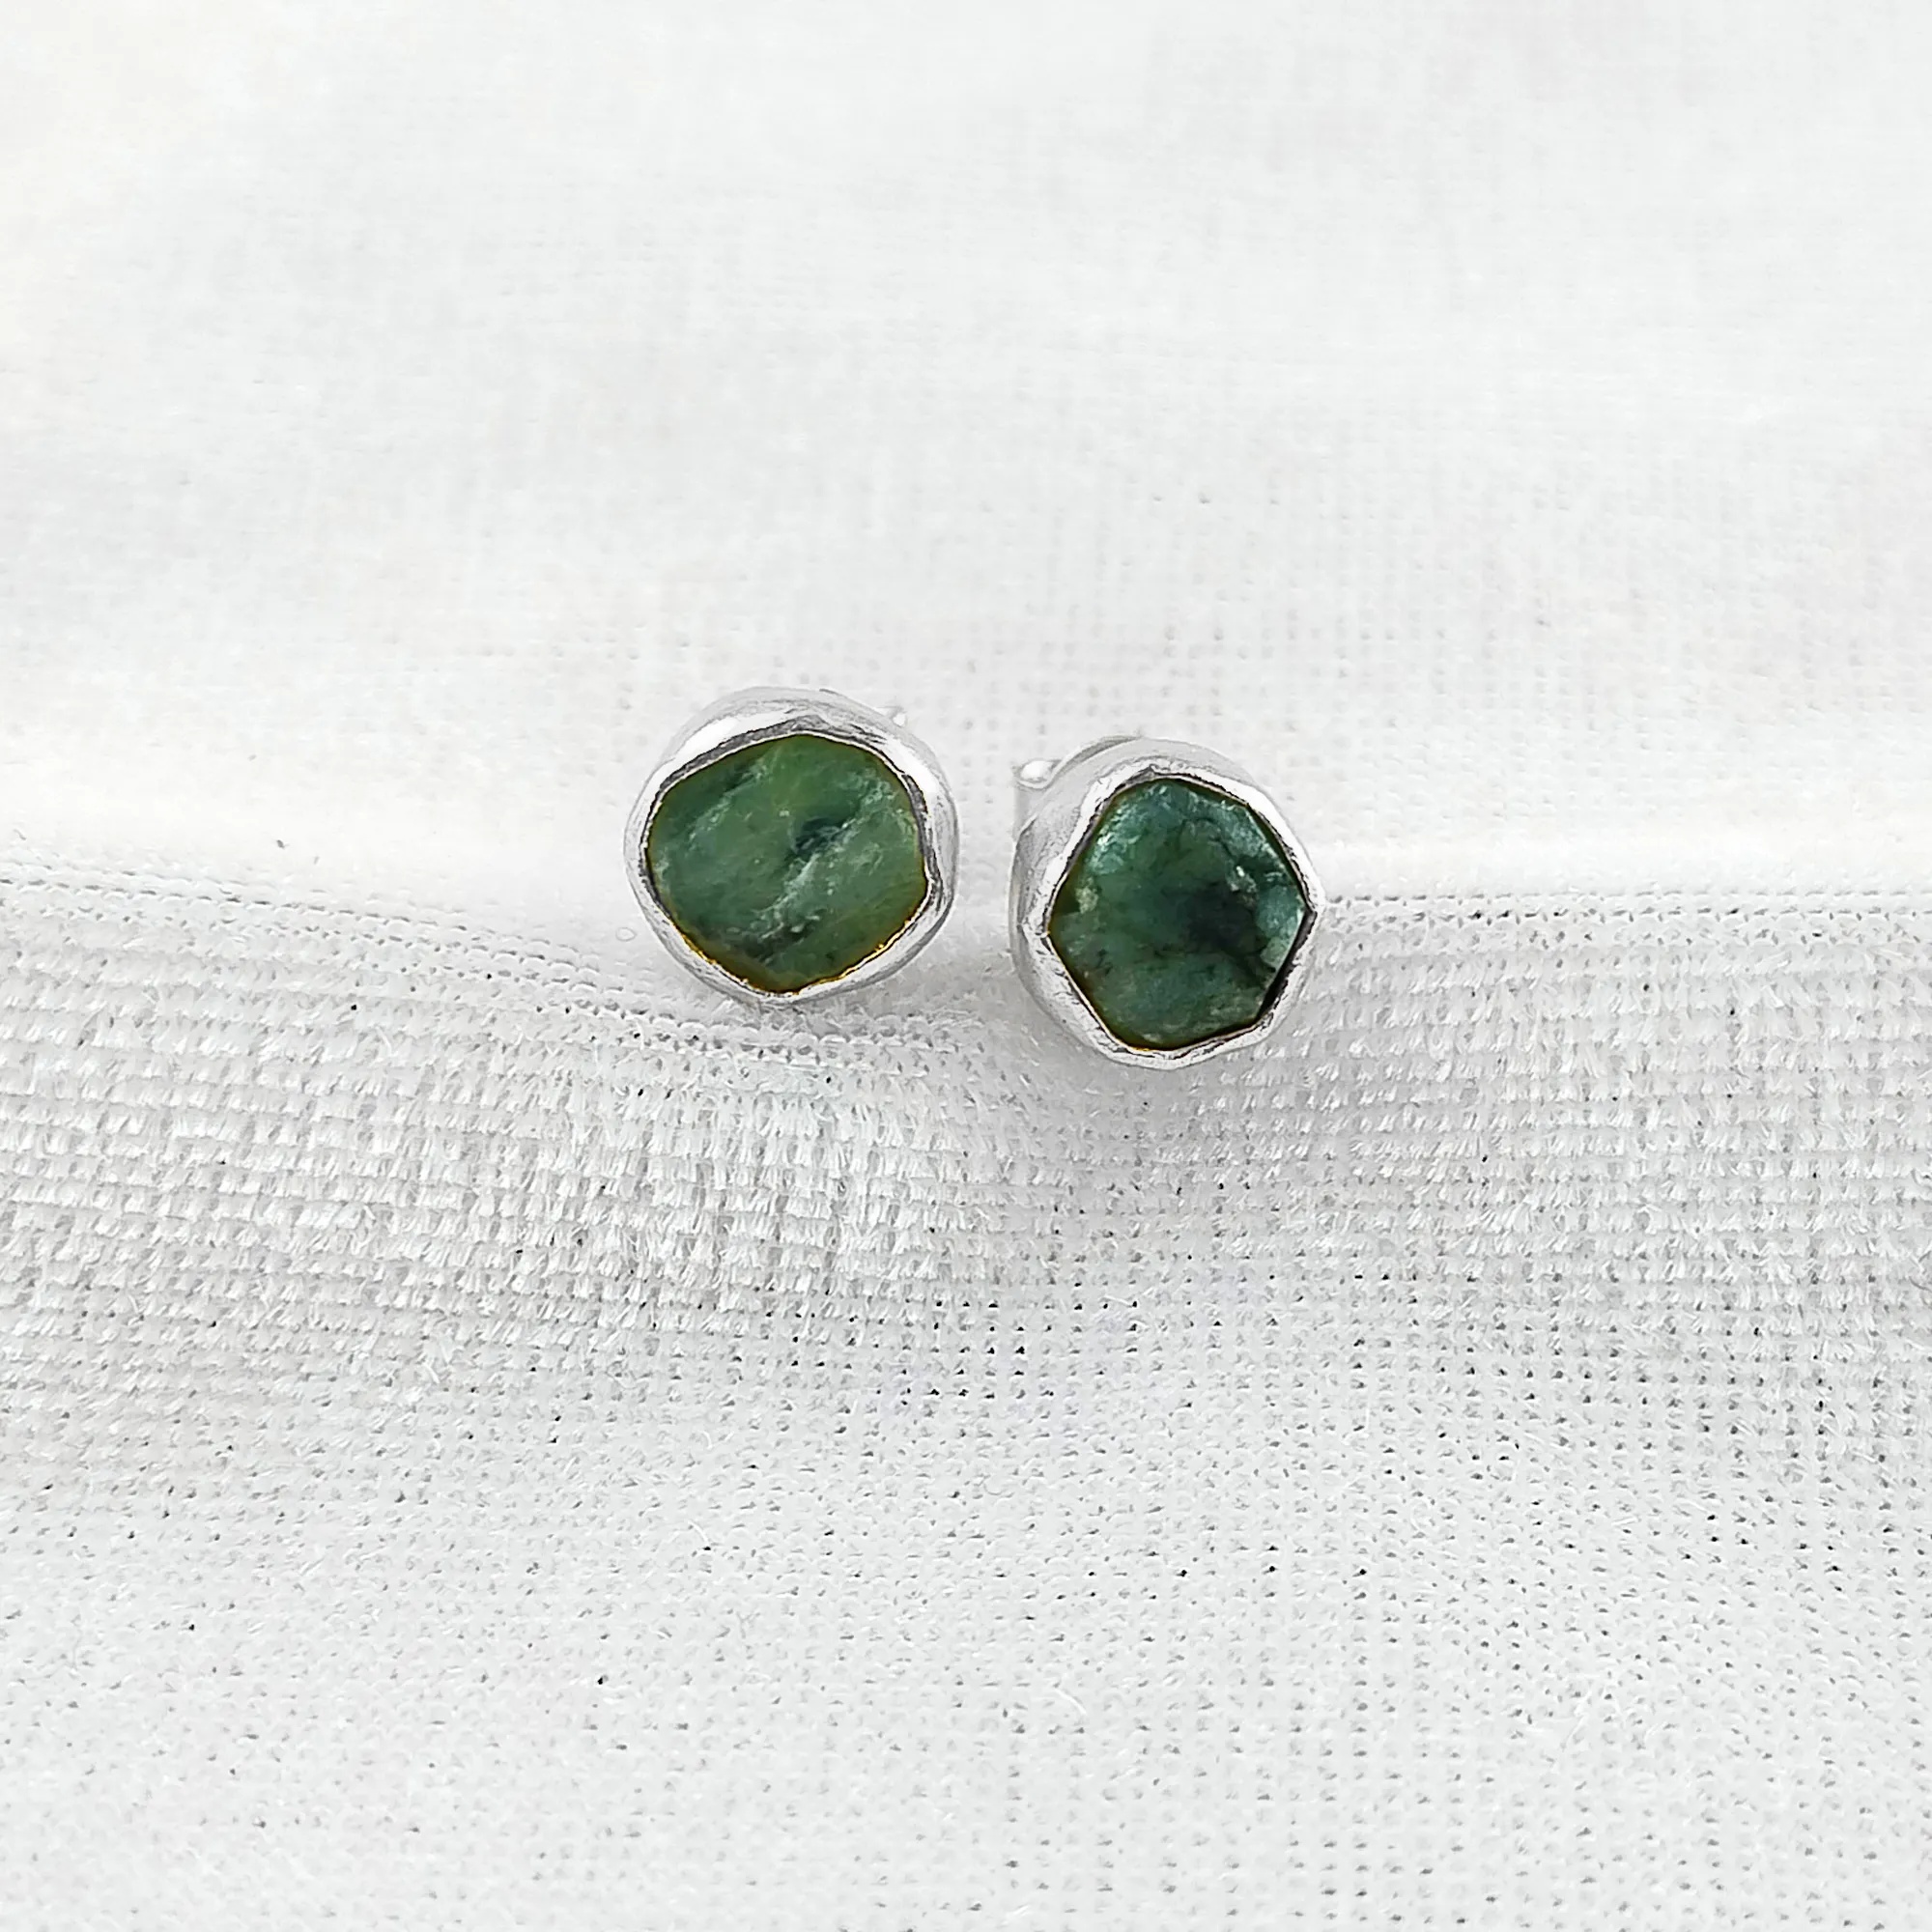 Doğal yeşil renk zümrüt ham şekil taş Collate Set gümüş 925 takı düğme küpe güzel ve moda taş mücevher